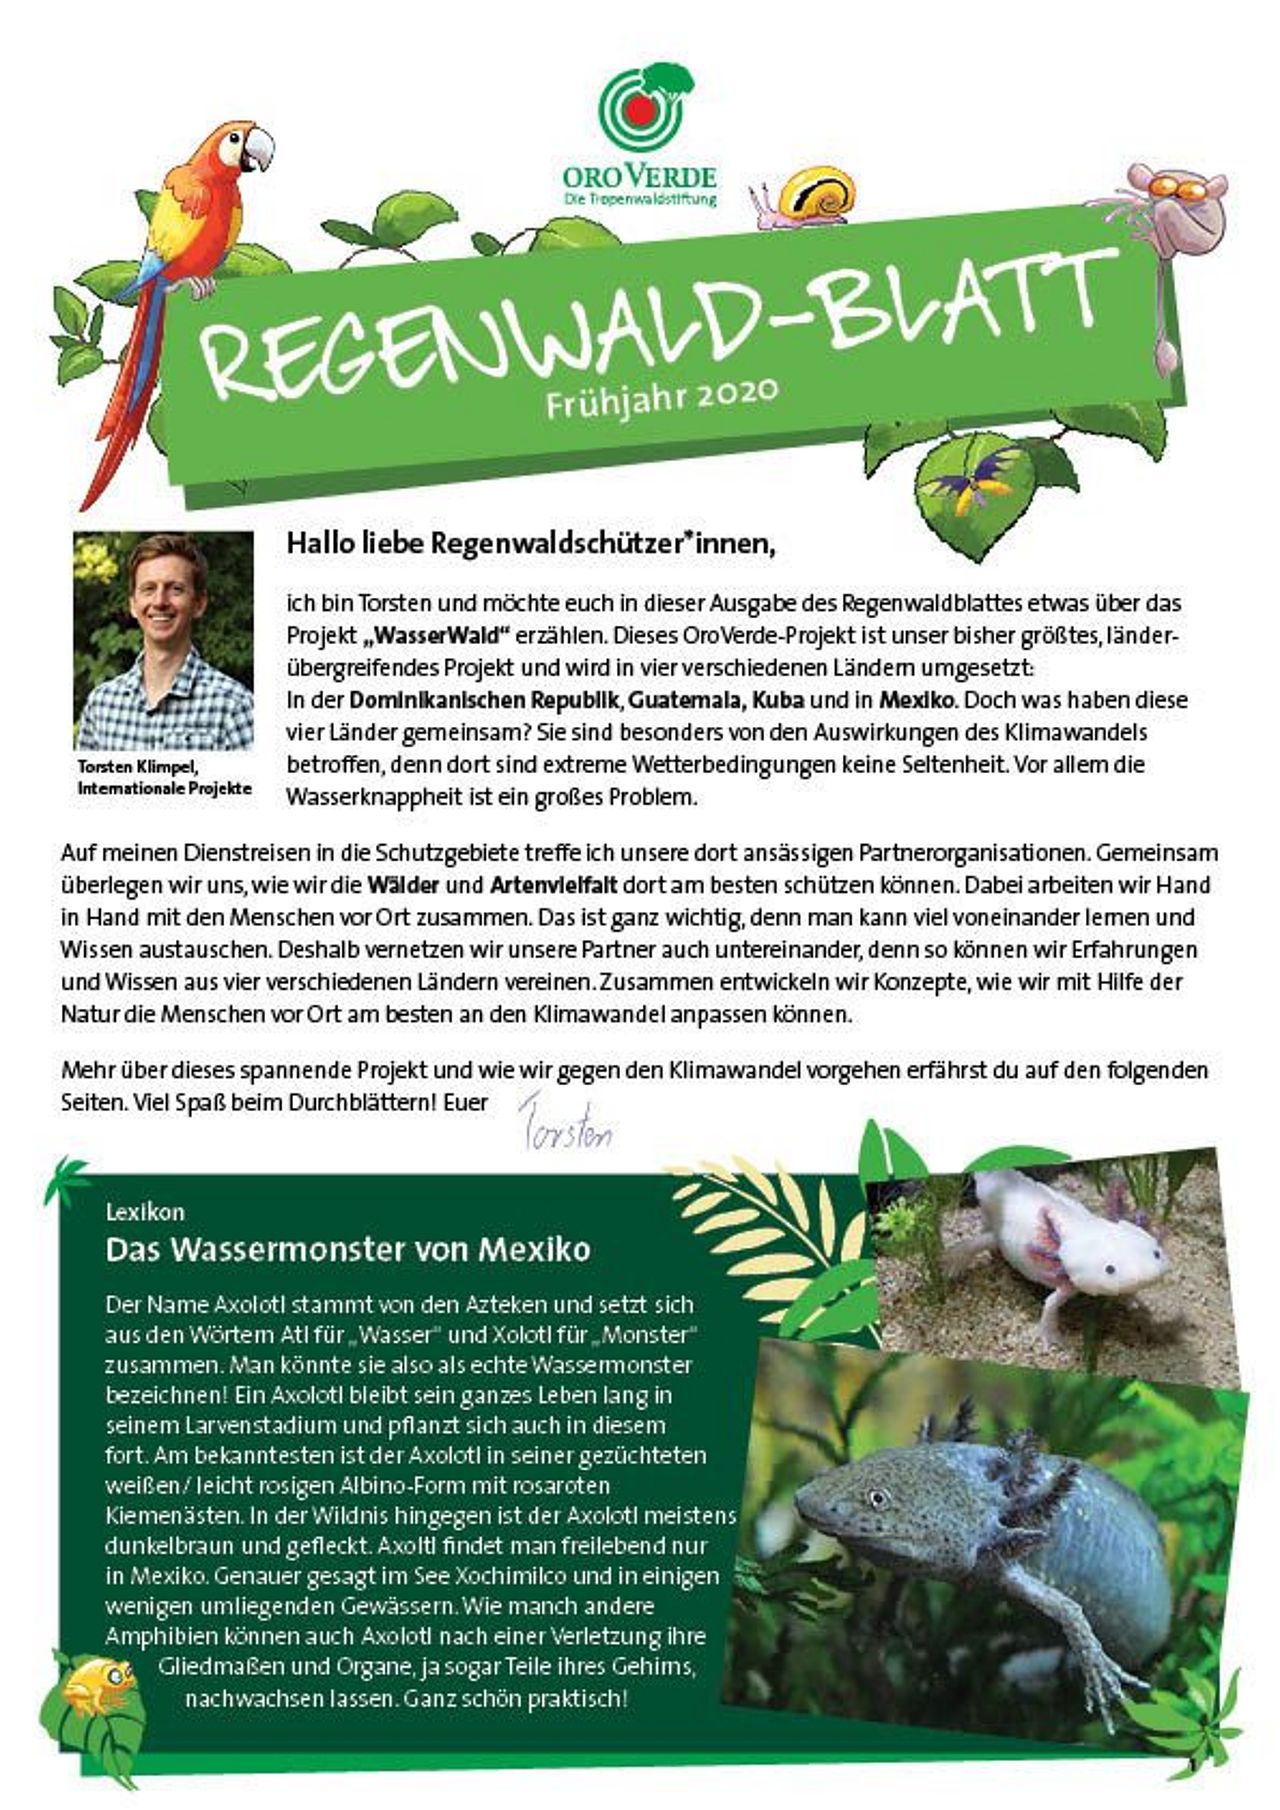 Im Regenwaldblatt Frühjahr 2020 berichtet Torsten über unser WasserWald-Projekt.